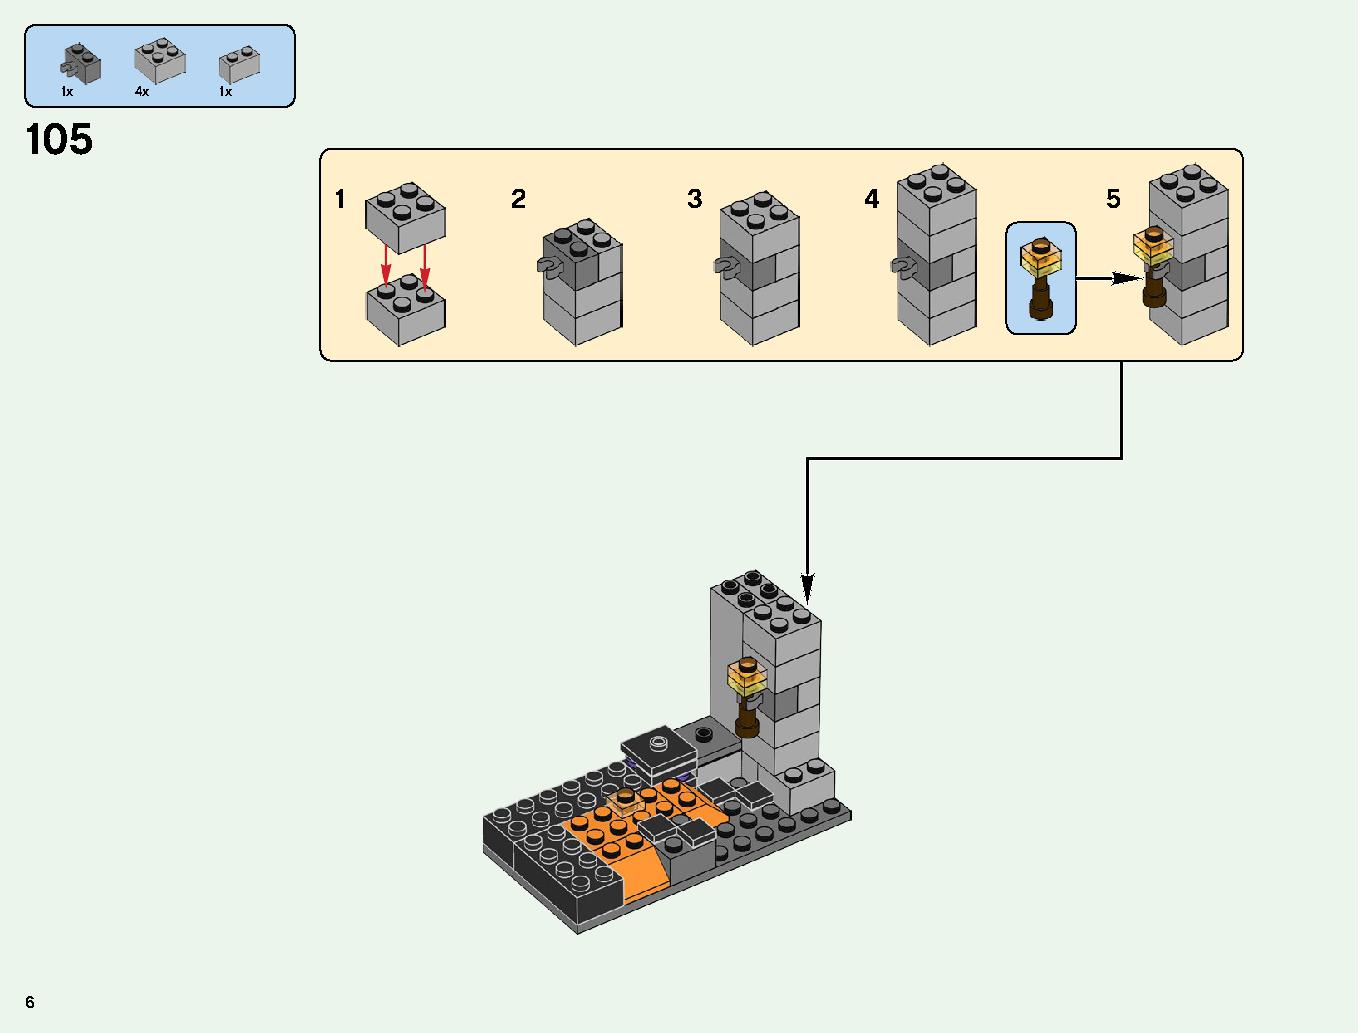 ベッドロックの冒険 21147 レゴの商品情報 レゴの説明書・組立方法 6 page